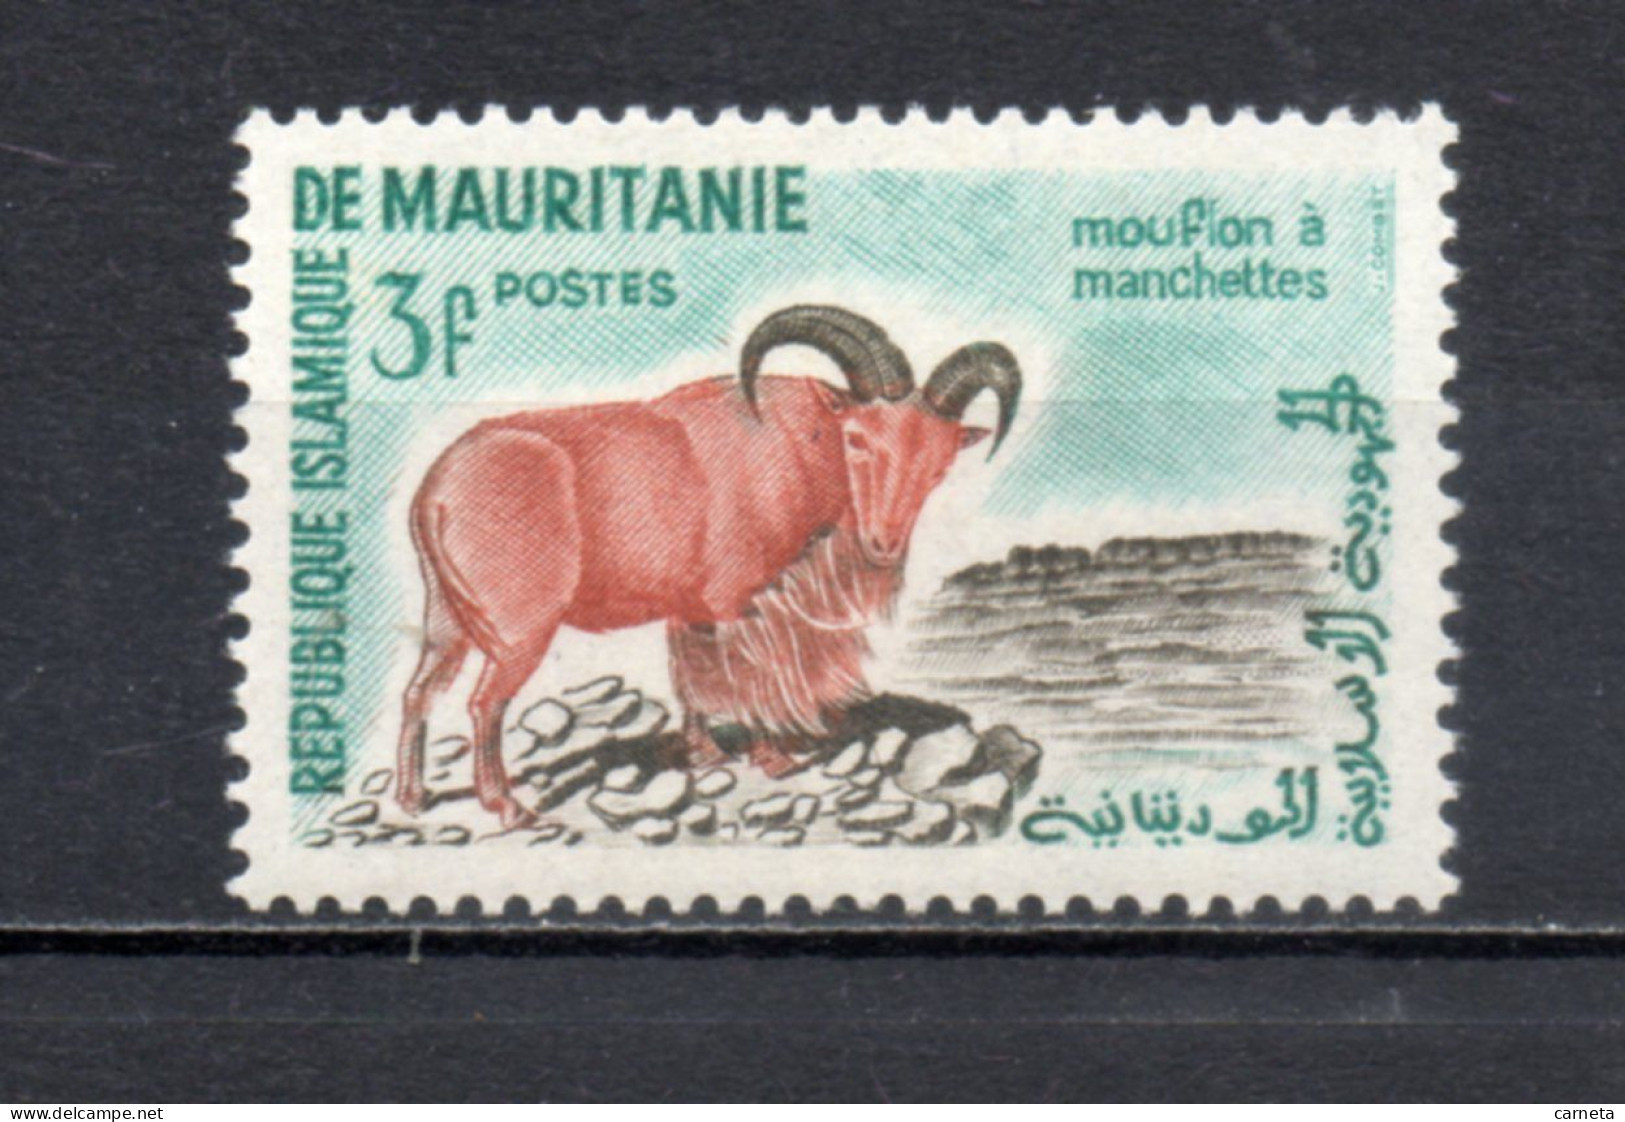 MAURITANIE  N° 143   NEUF SANS CHARNIERE   COTE 0.80€    ANIMAUX FAUNE - Mauritanië (1960-...)